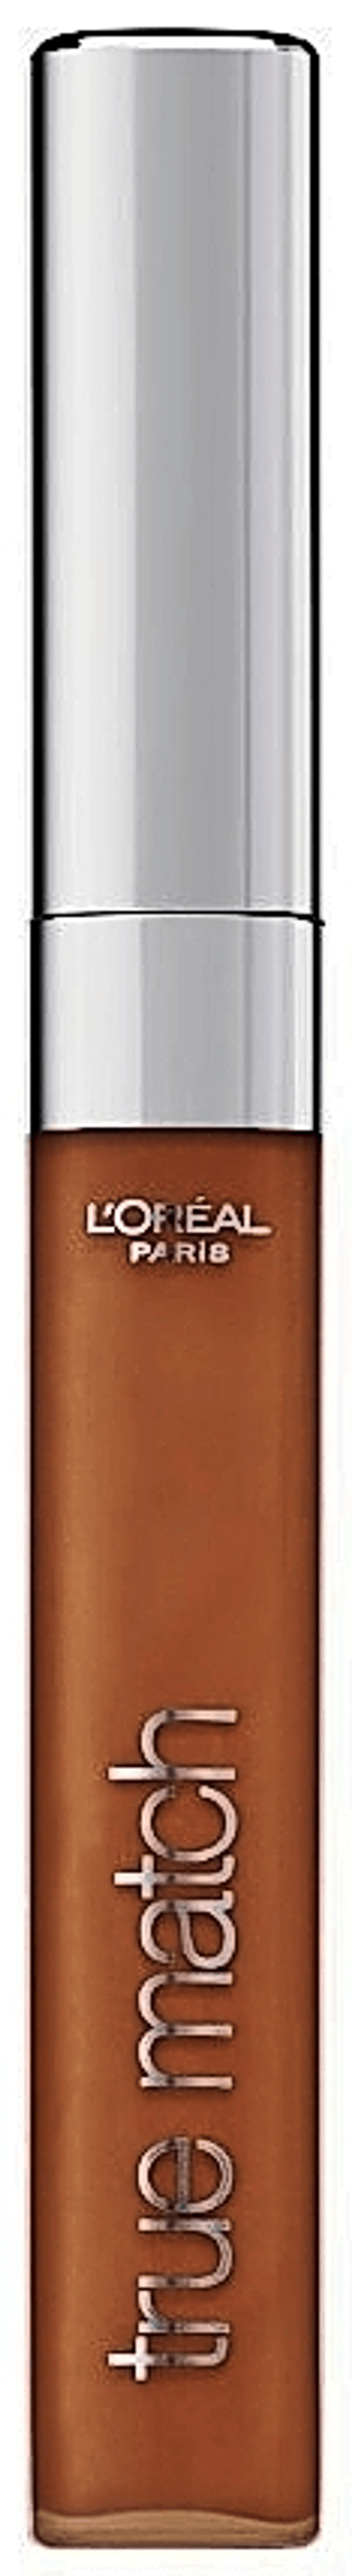 Buy L'Oreal Paris True Match Super Blendable Concealer, 7Dw Golden